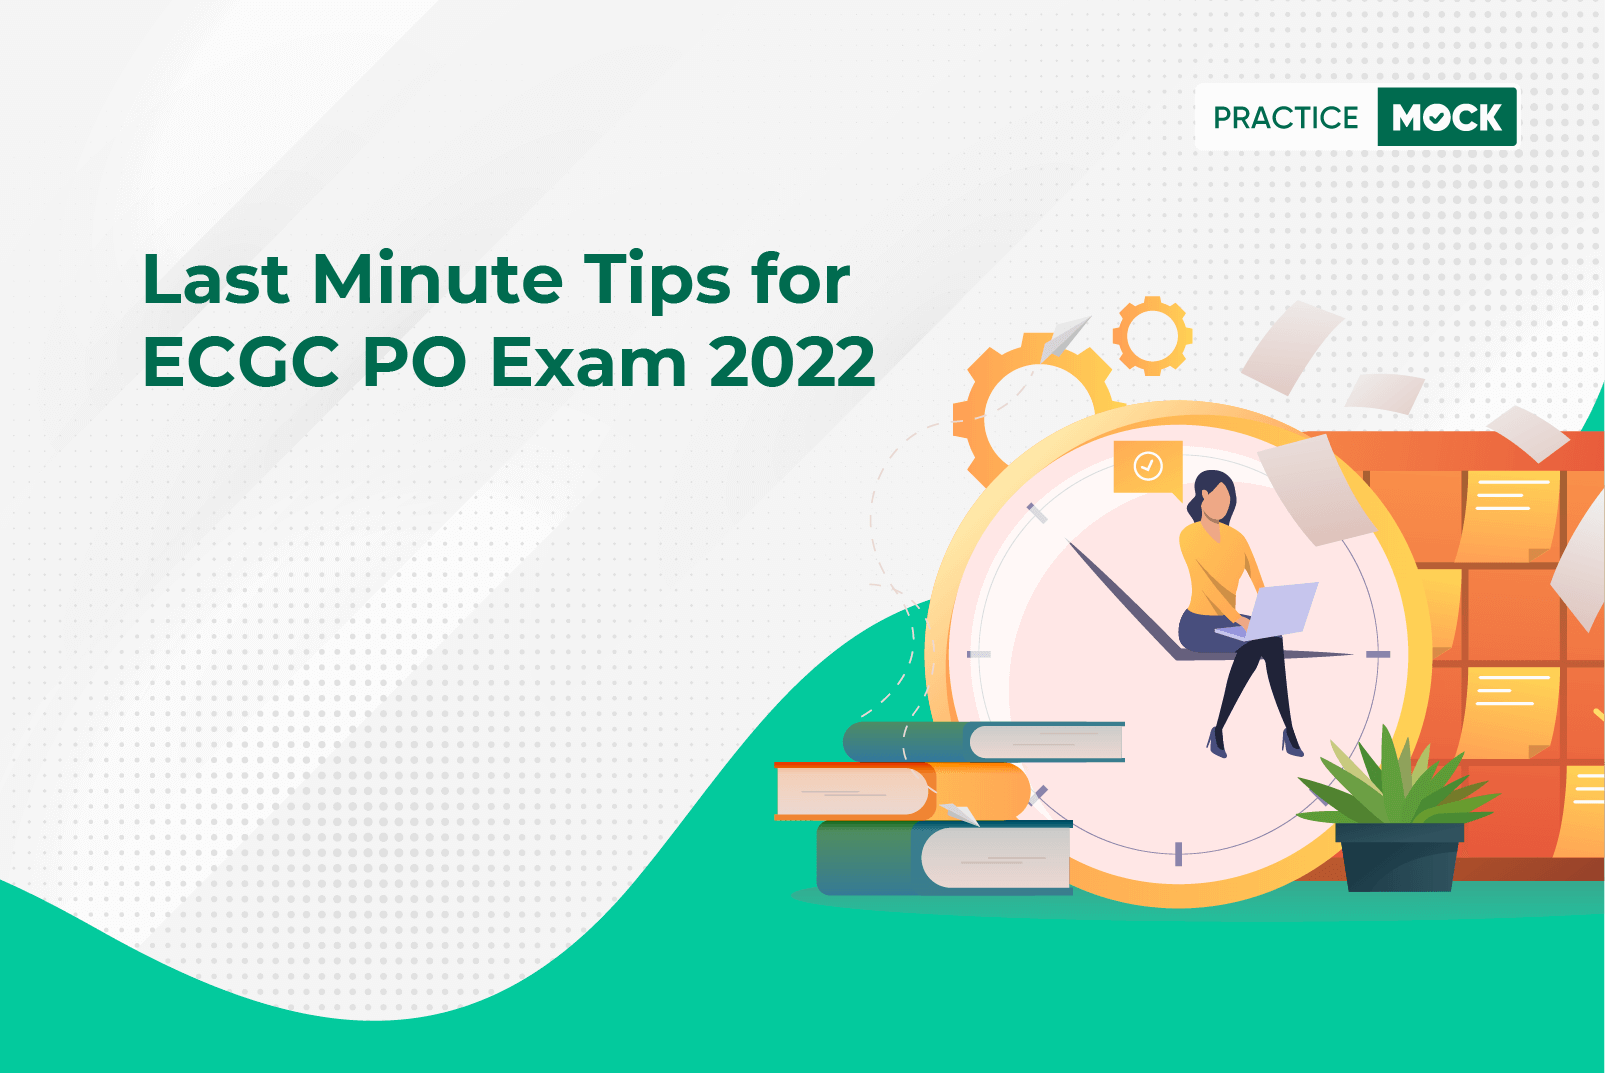 ECGC PO 2022 Exam-Last Minute Tips for Success